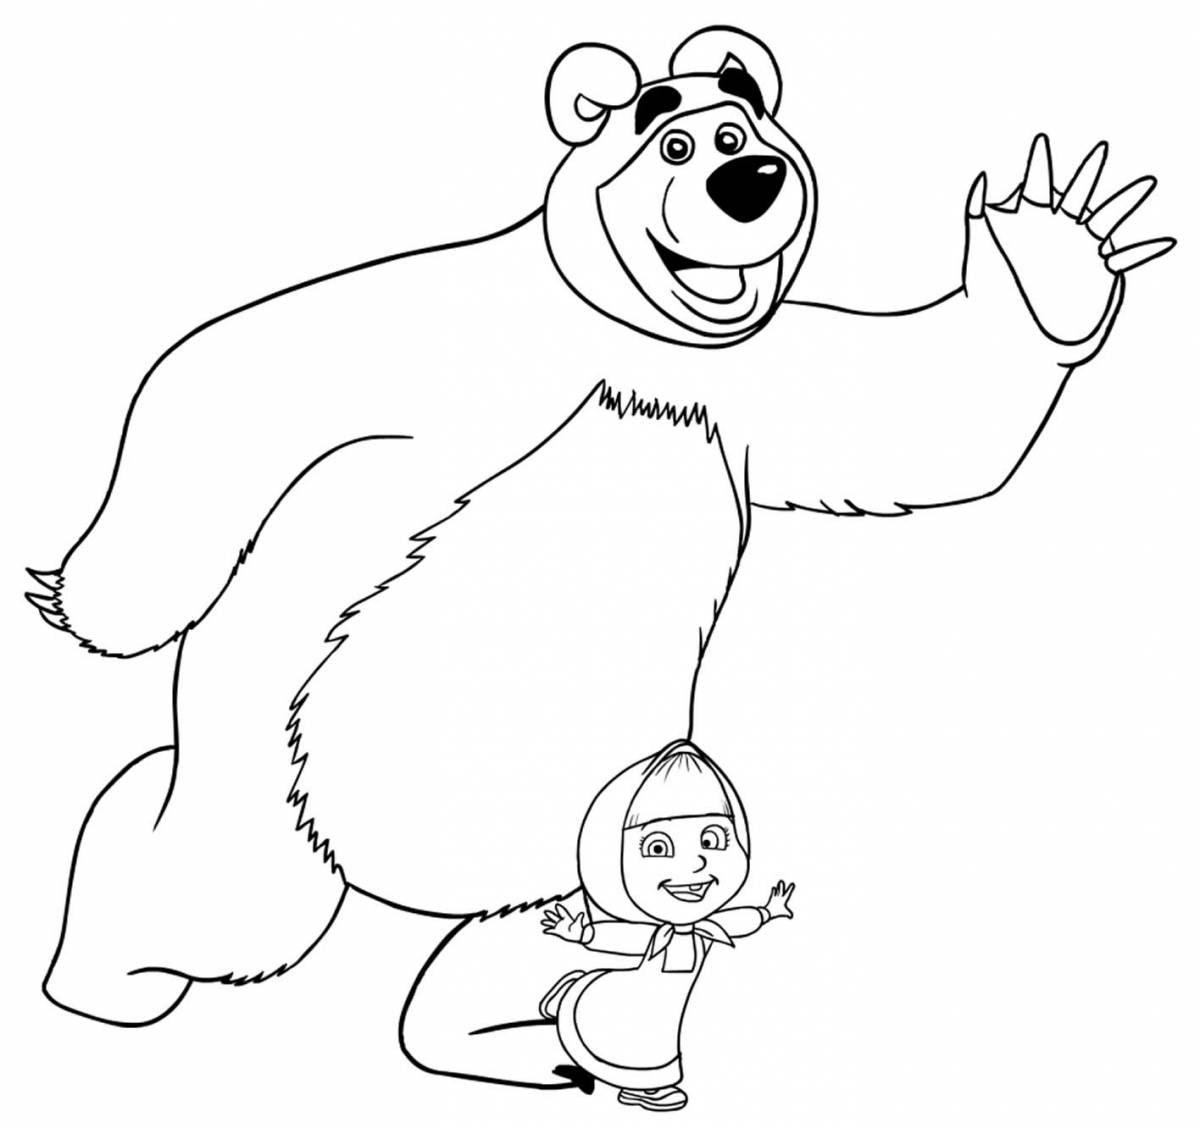 Witty Masha and Dasha and the bear